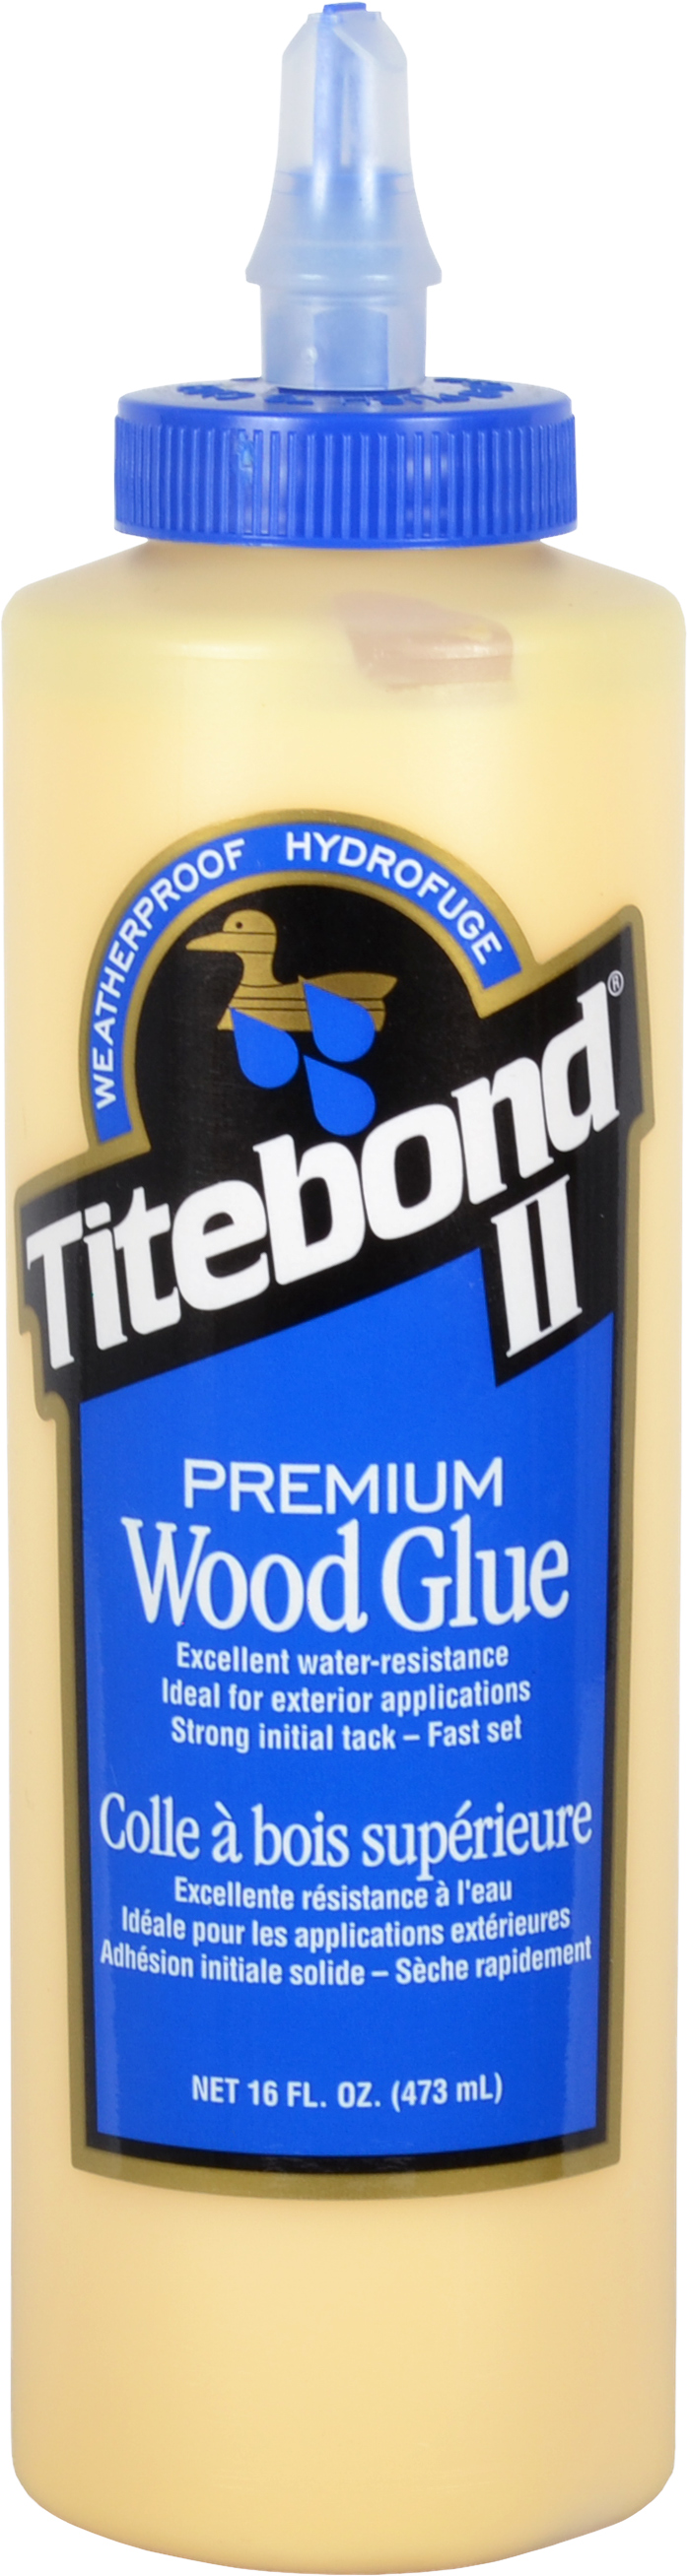 Franklin Titebond III Wood Glue - 32 fl oz bottle